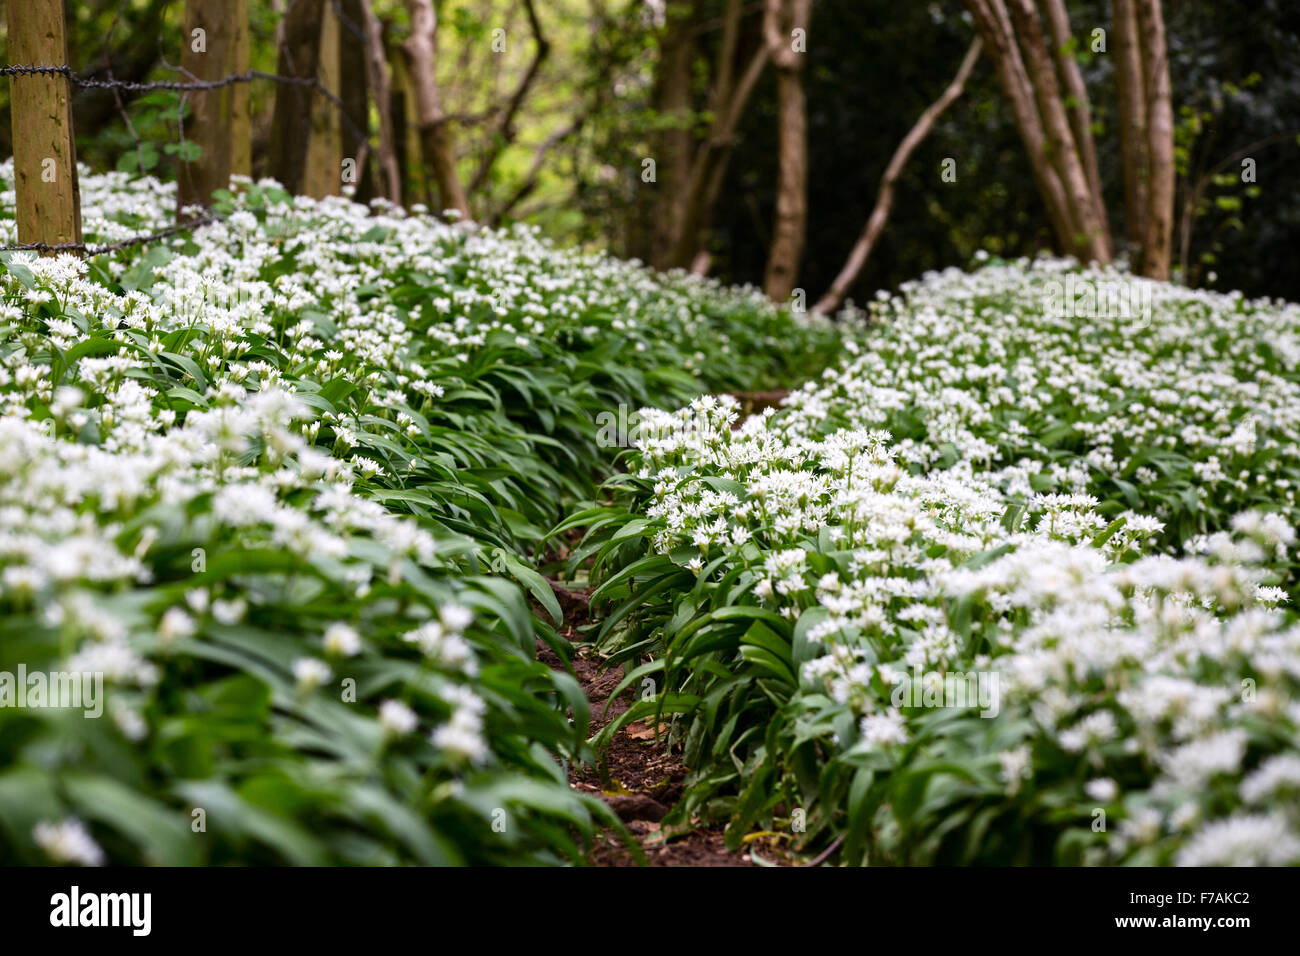 Aglio selvatico, Allium ursinum in fiore in primavera cresce a fianco di un bosco di percorso nella campagna inglese..le piante sono uno spettacolo impressionante Foto Stock